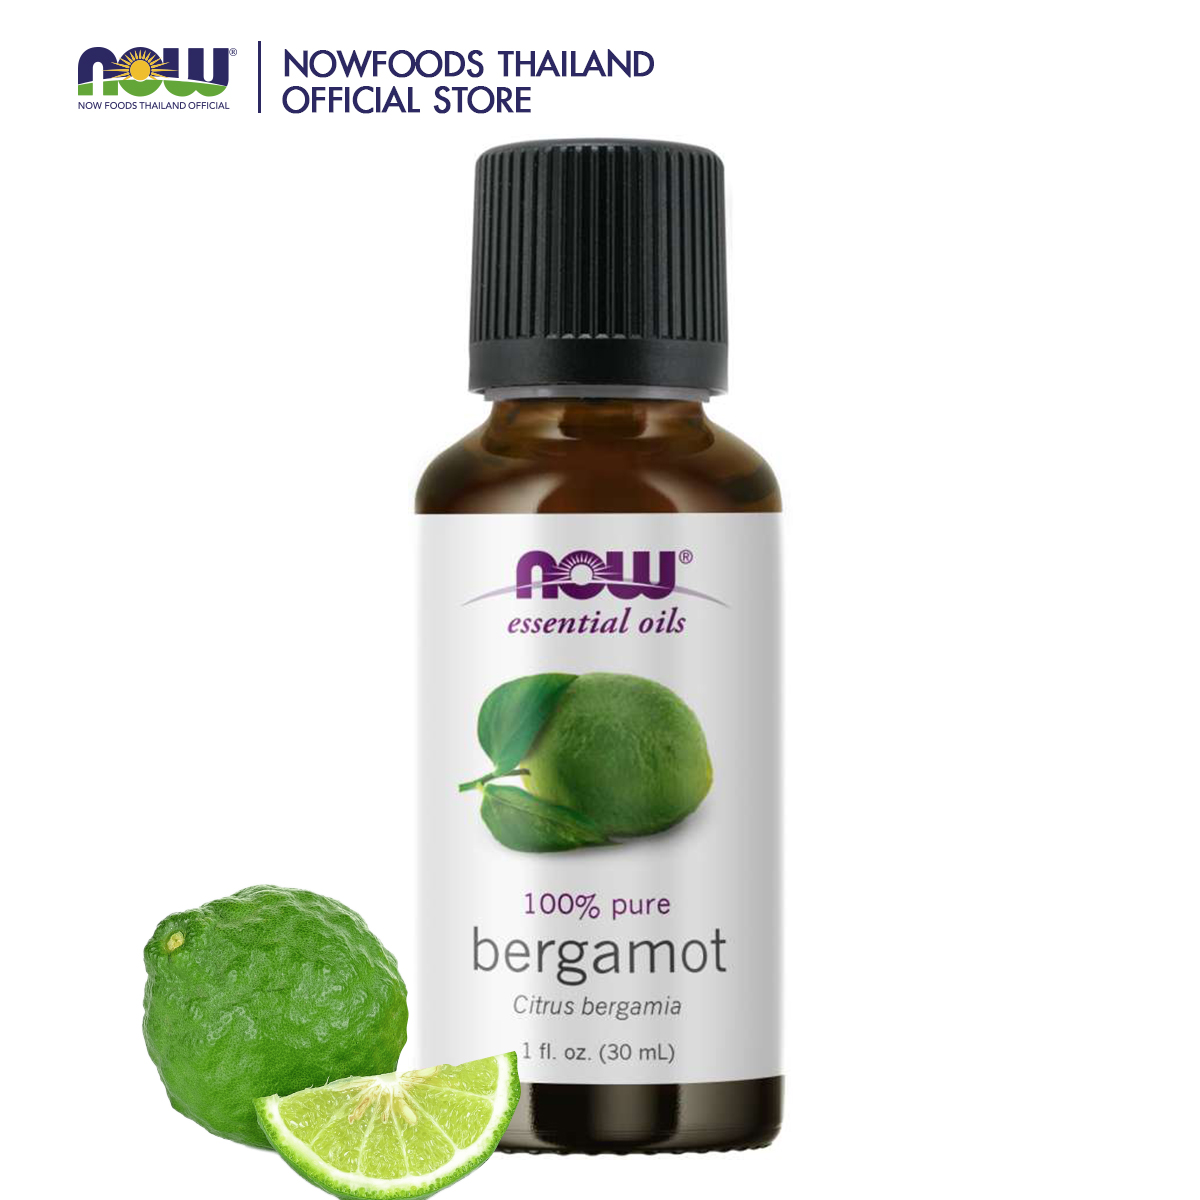 NOW Bergamot Oil 1 fl. oz. (30 mL)